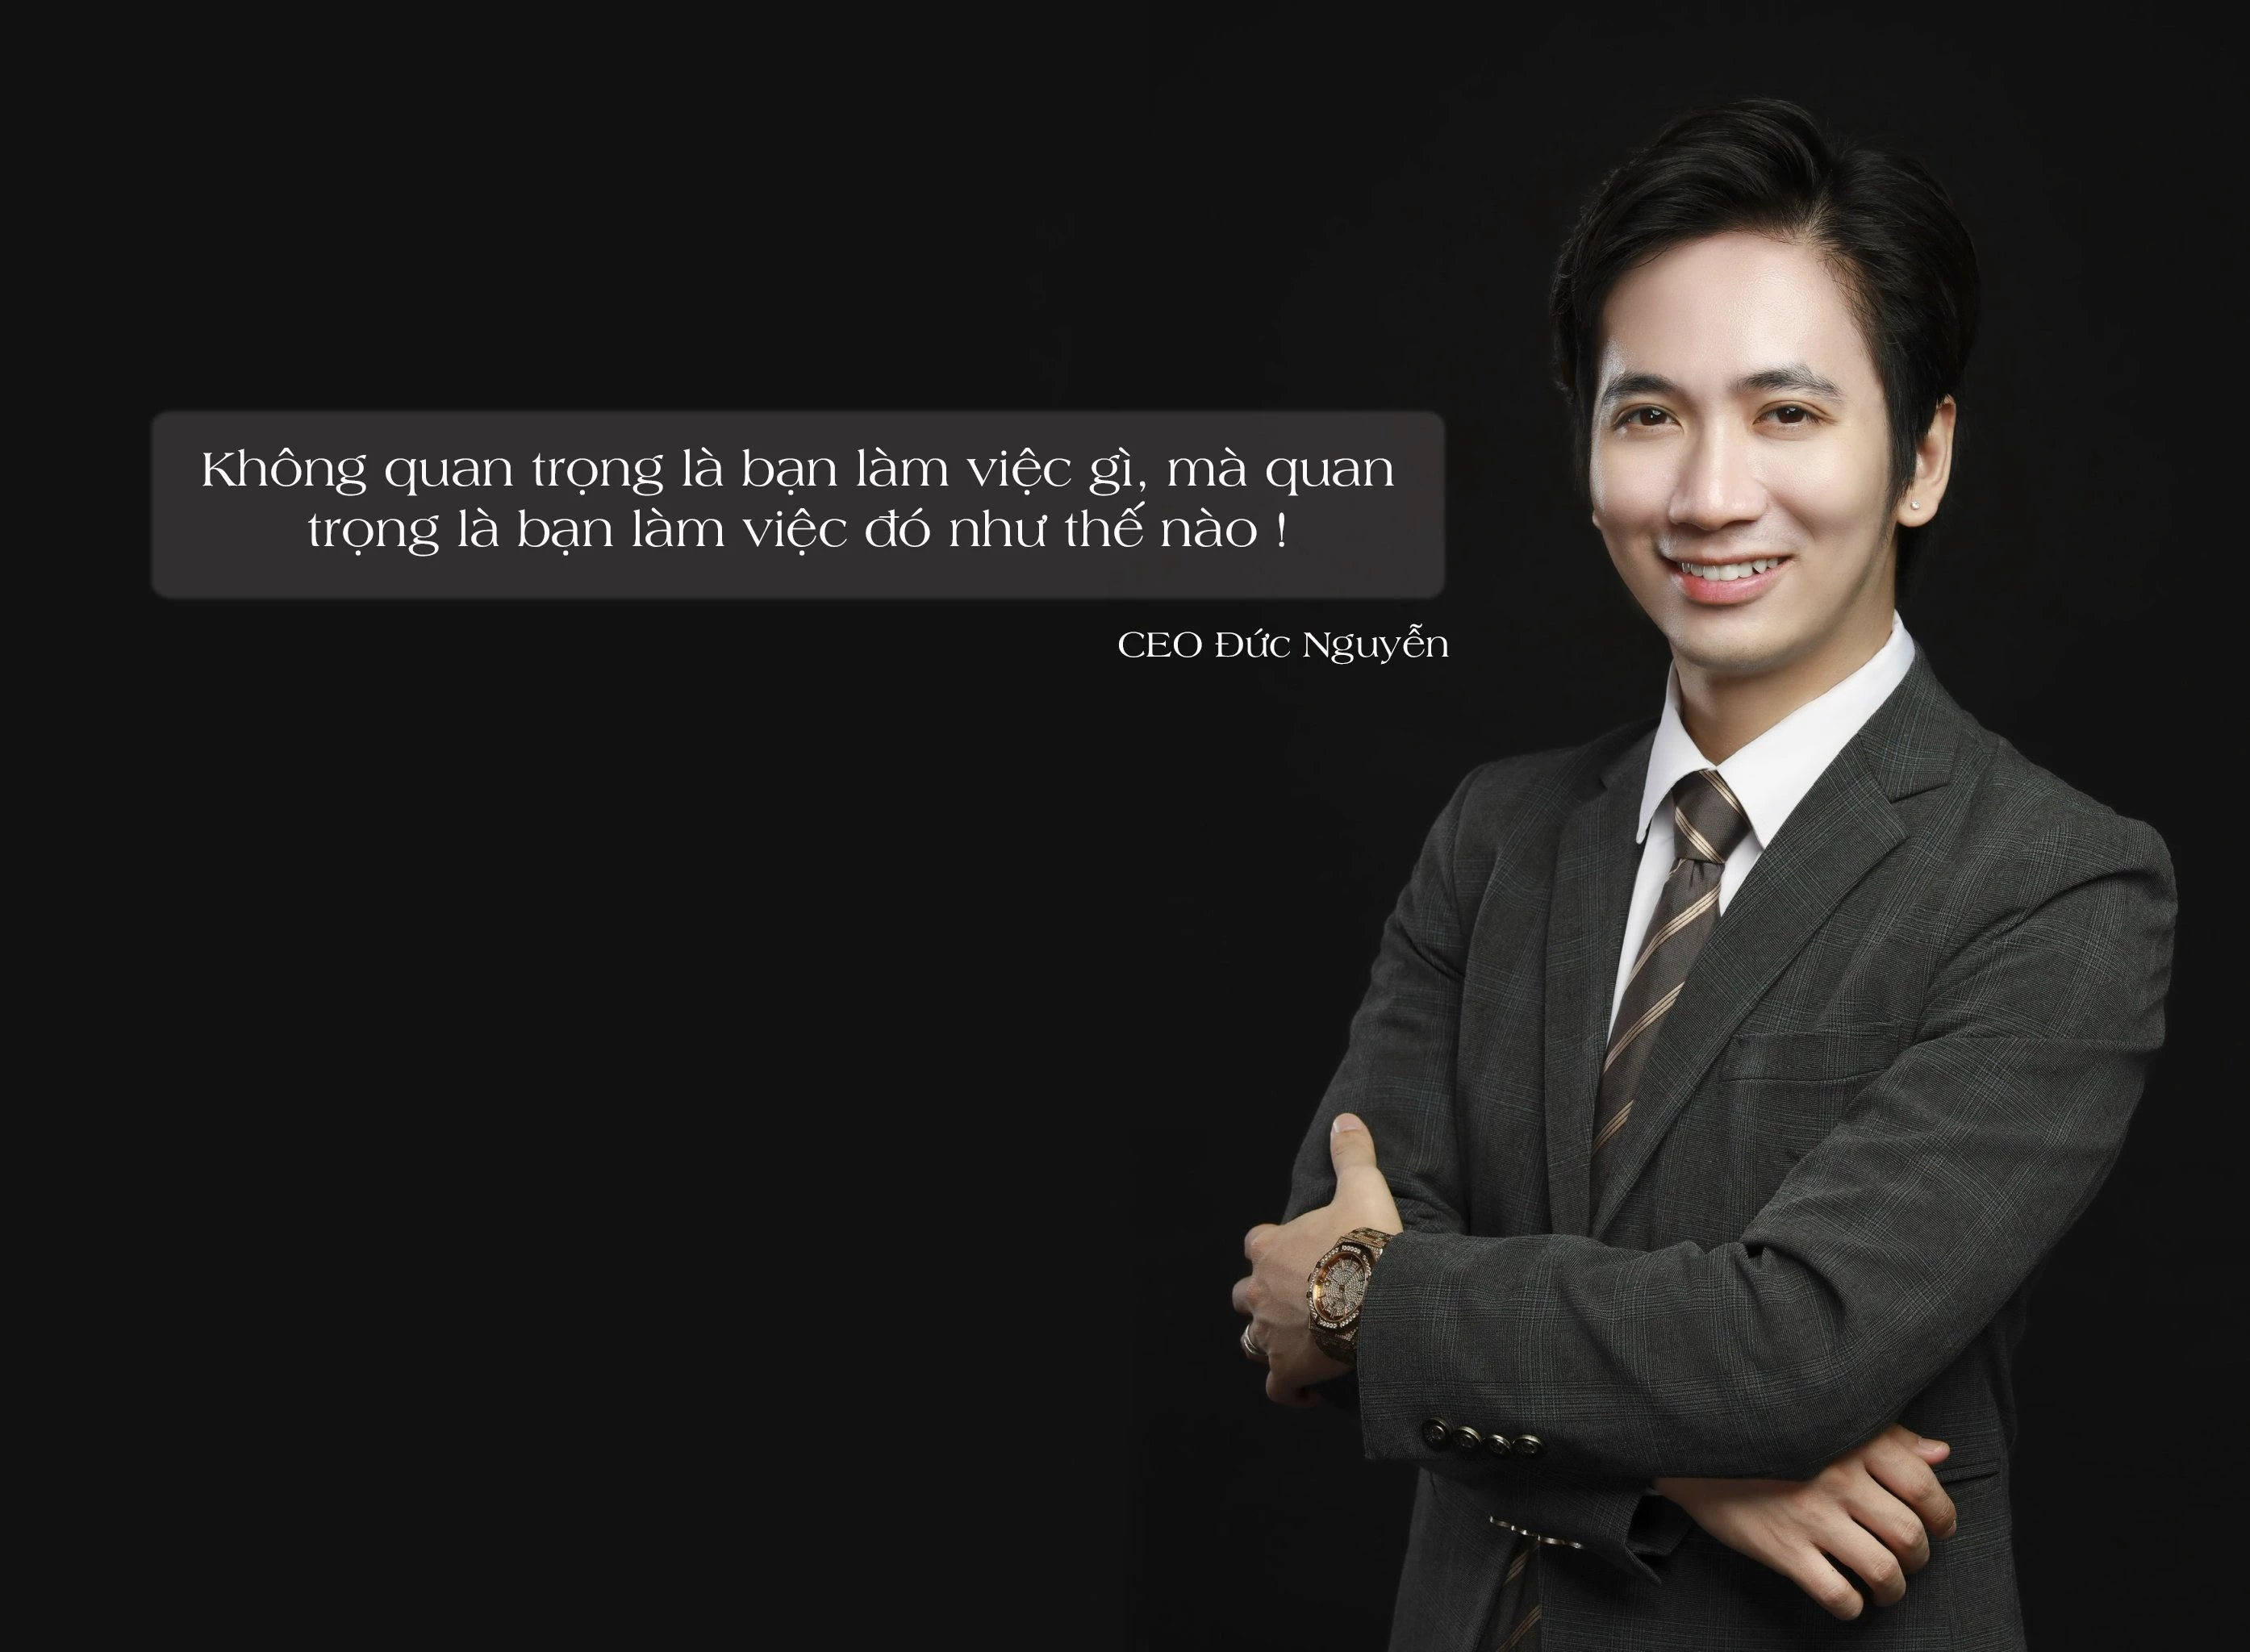    “Không quan trọng là bạn làm việc gì, mà quan trọng là bạn làm việc đó như thế nào !” - CEO Đức Nguyễn.